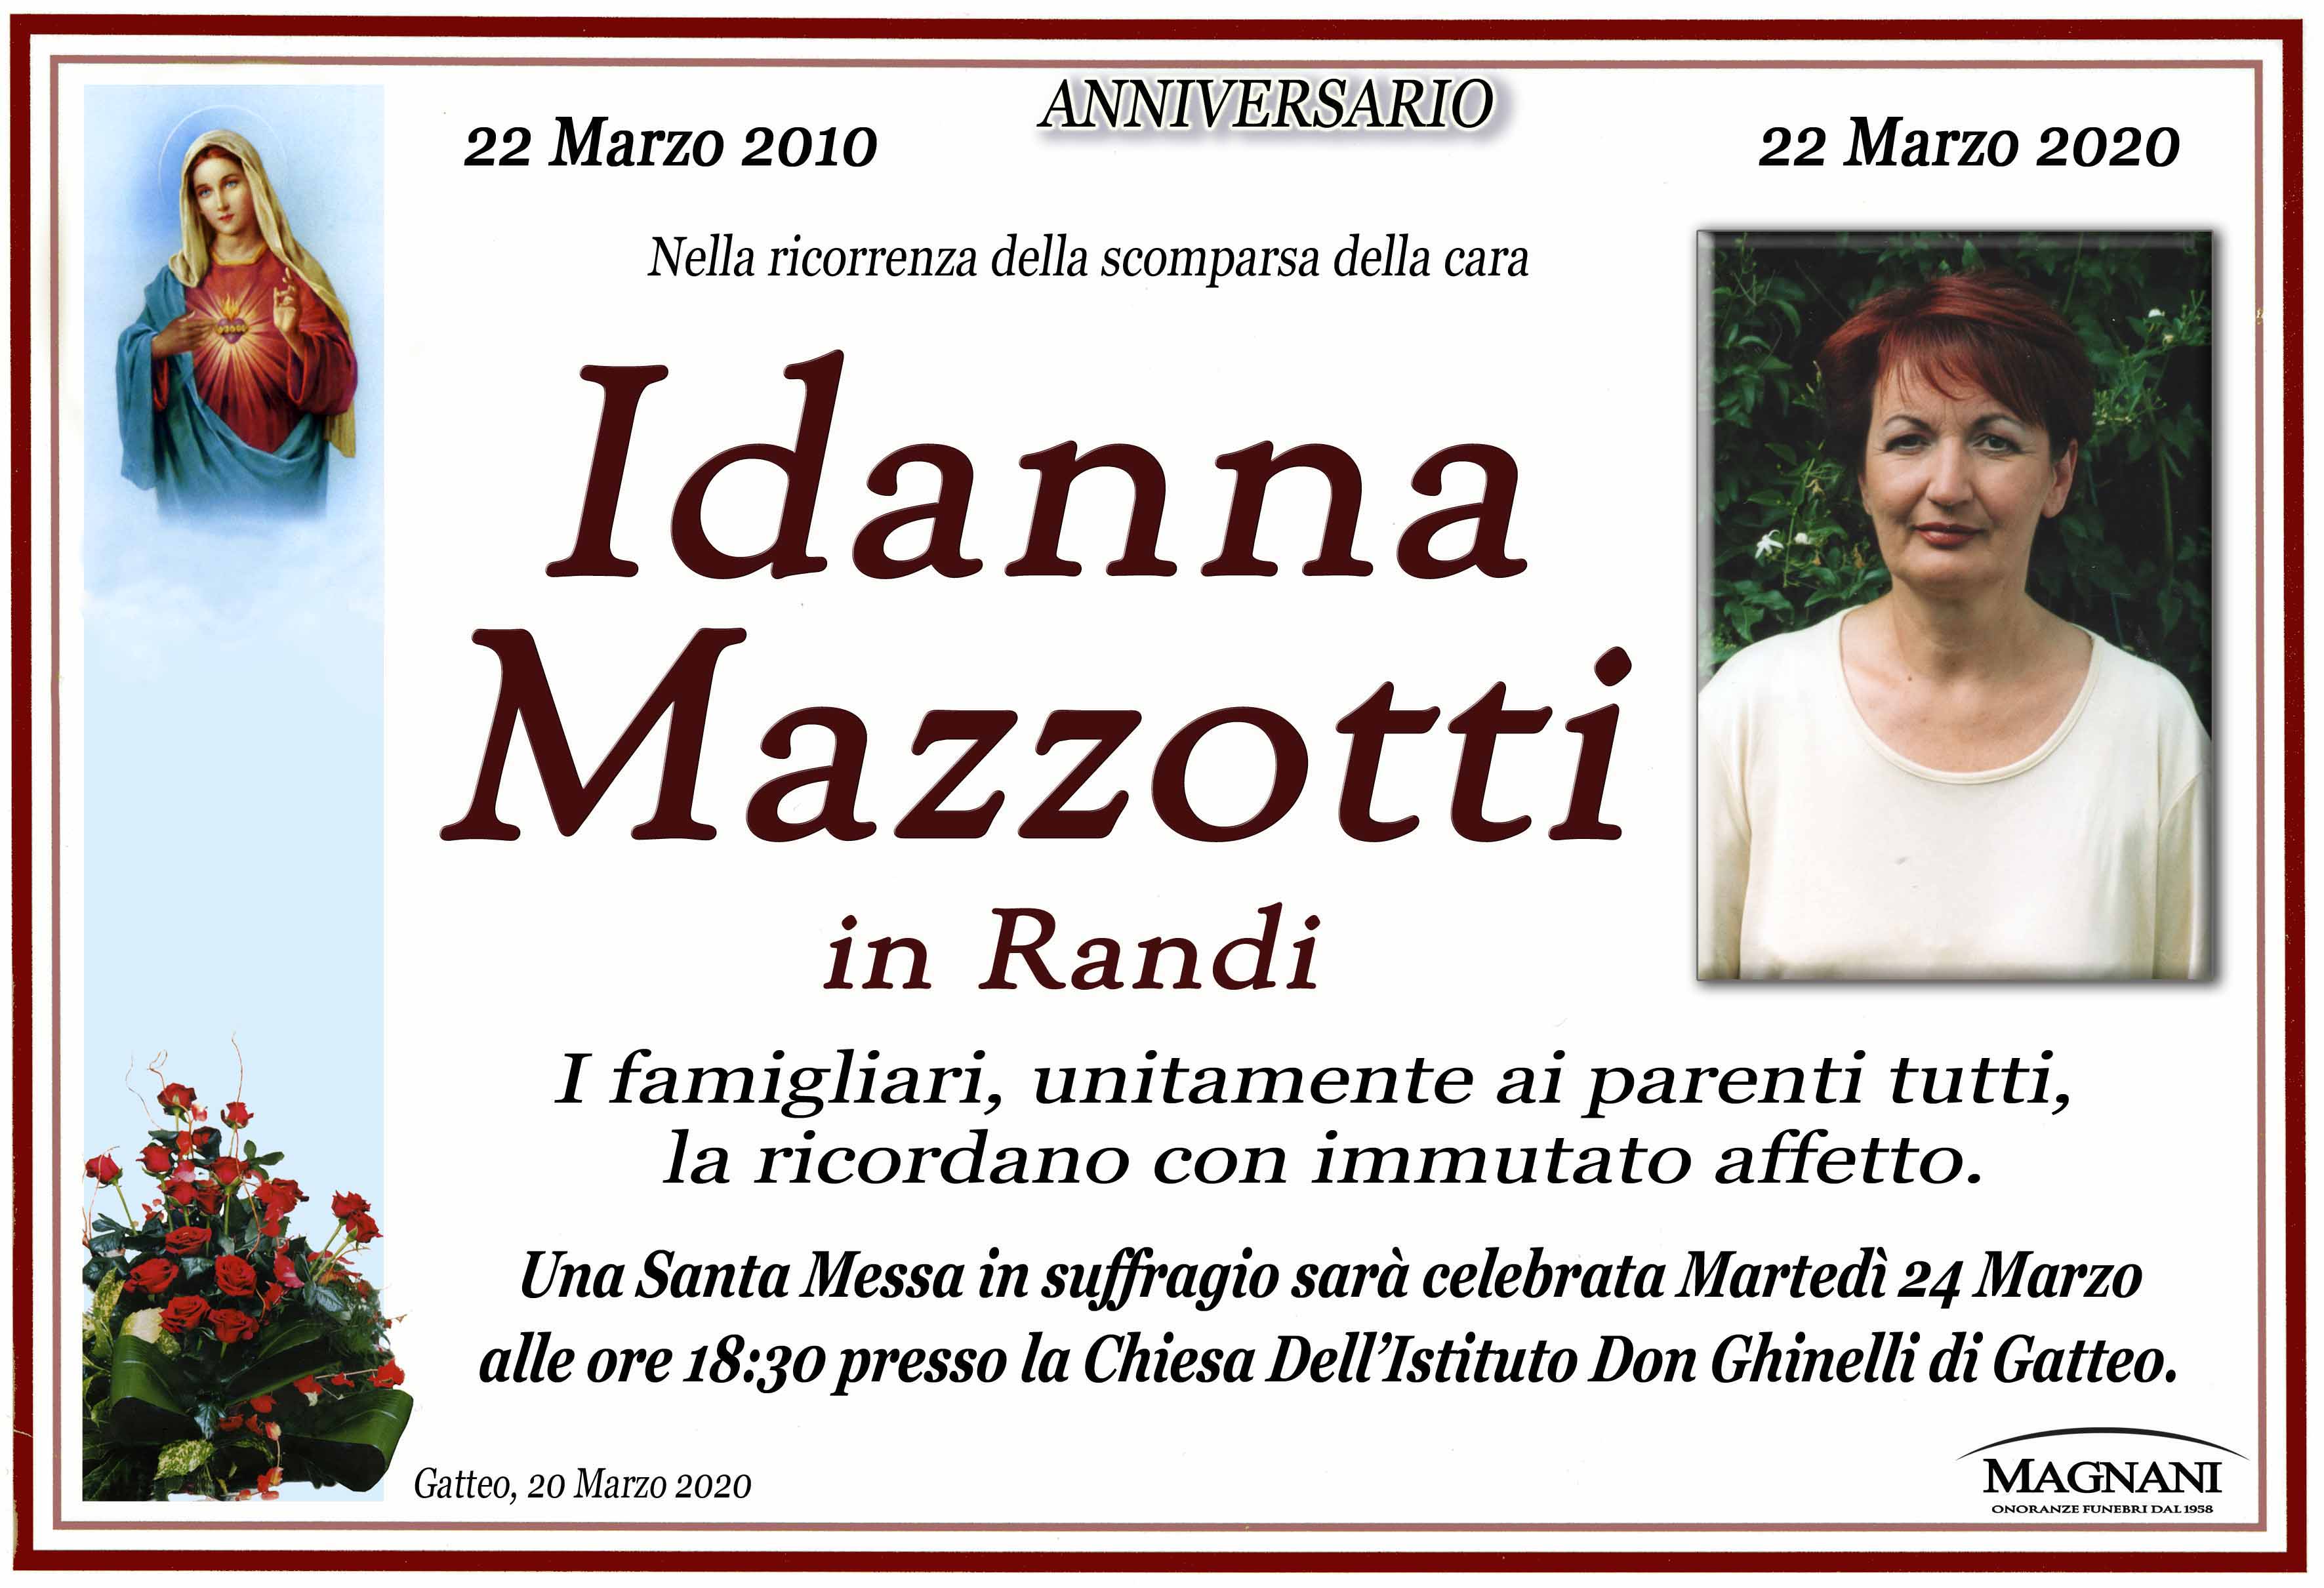 Idanna Mazzotti